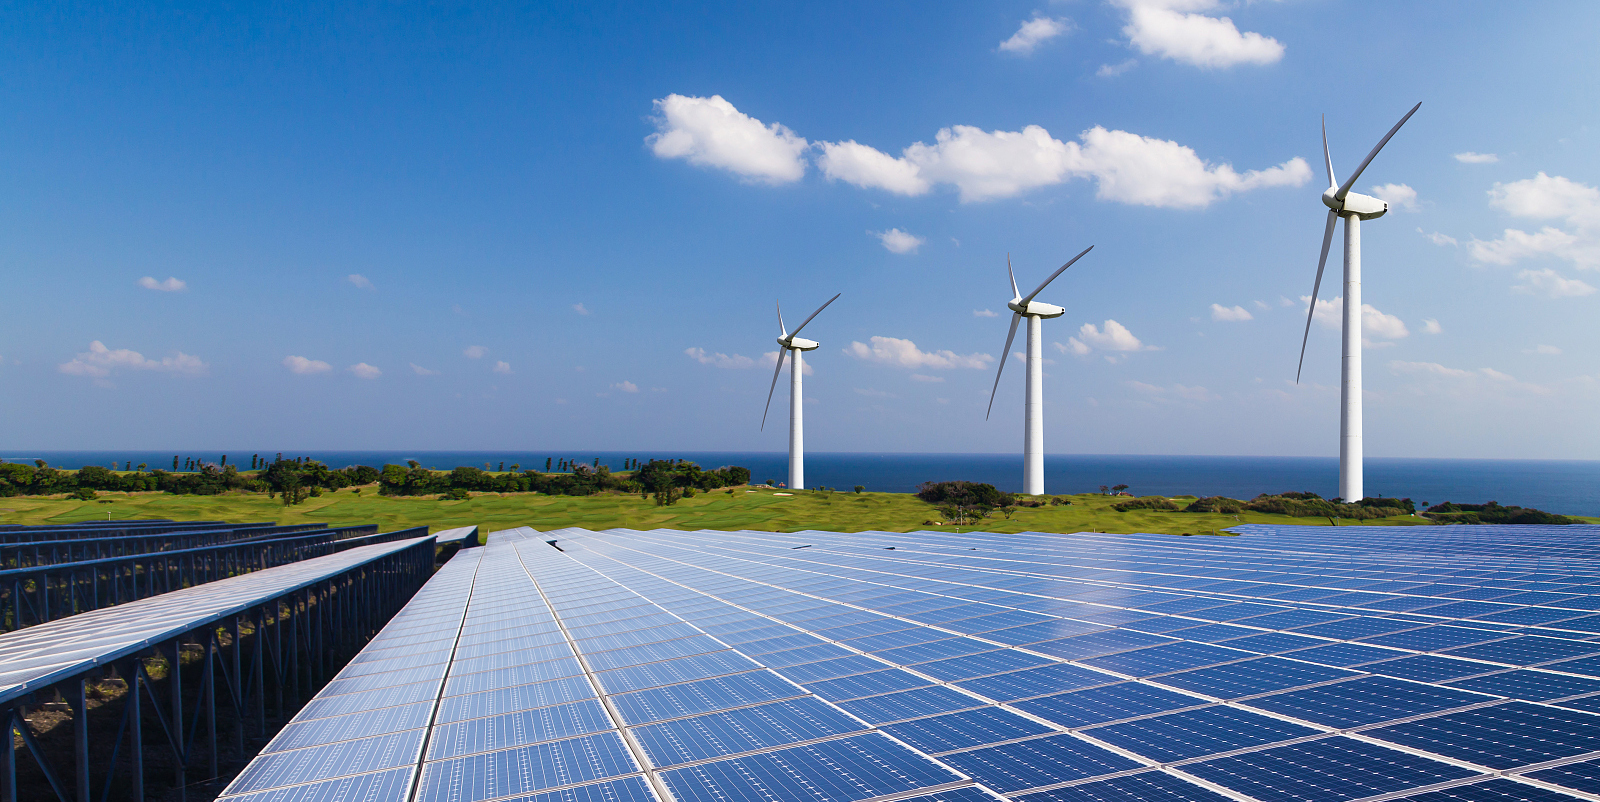 A Sinopec először tette közzé közép- és hosszú távú energiakilátásait, és 2040 körül a fotovoltaikus energia lesz a legnagyobb energiaforrás.